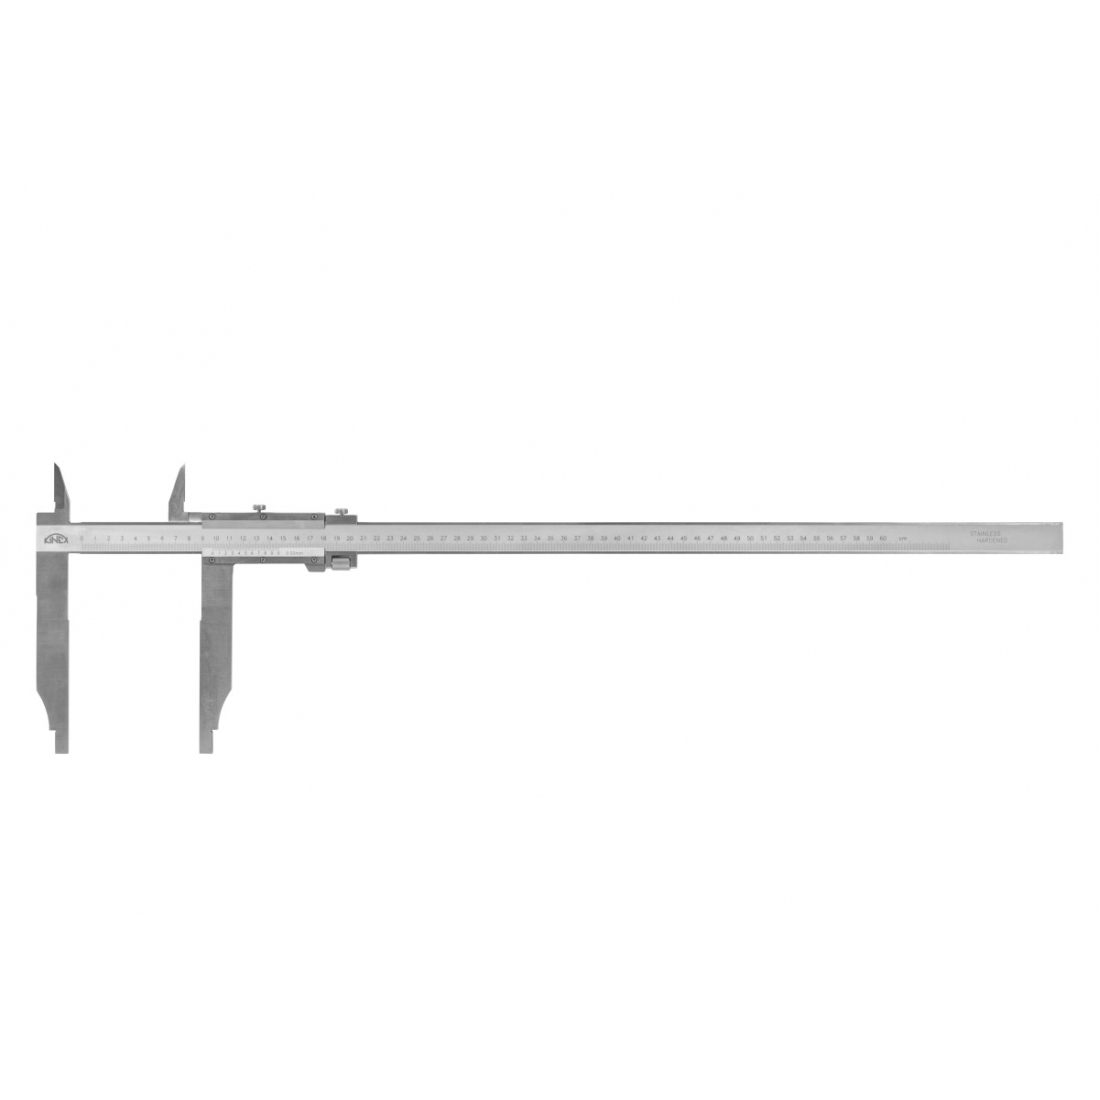 KINEX/K-MET Posuvné měřítko s jemným stavěním KINEX 2000 mm, 200 mm, 0,05 mm, s horními noži, ČSN 25 1231, DIN 862